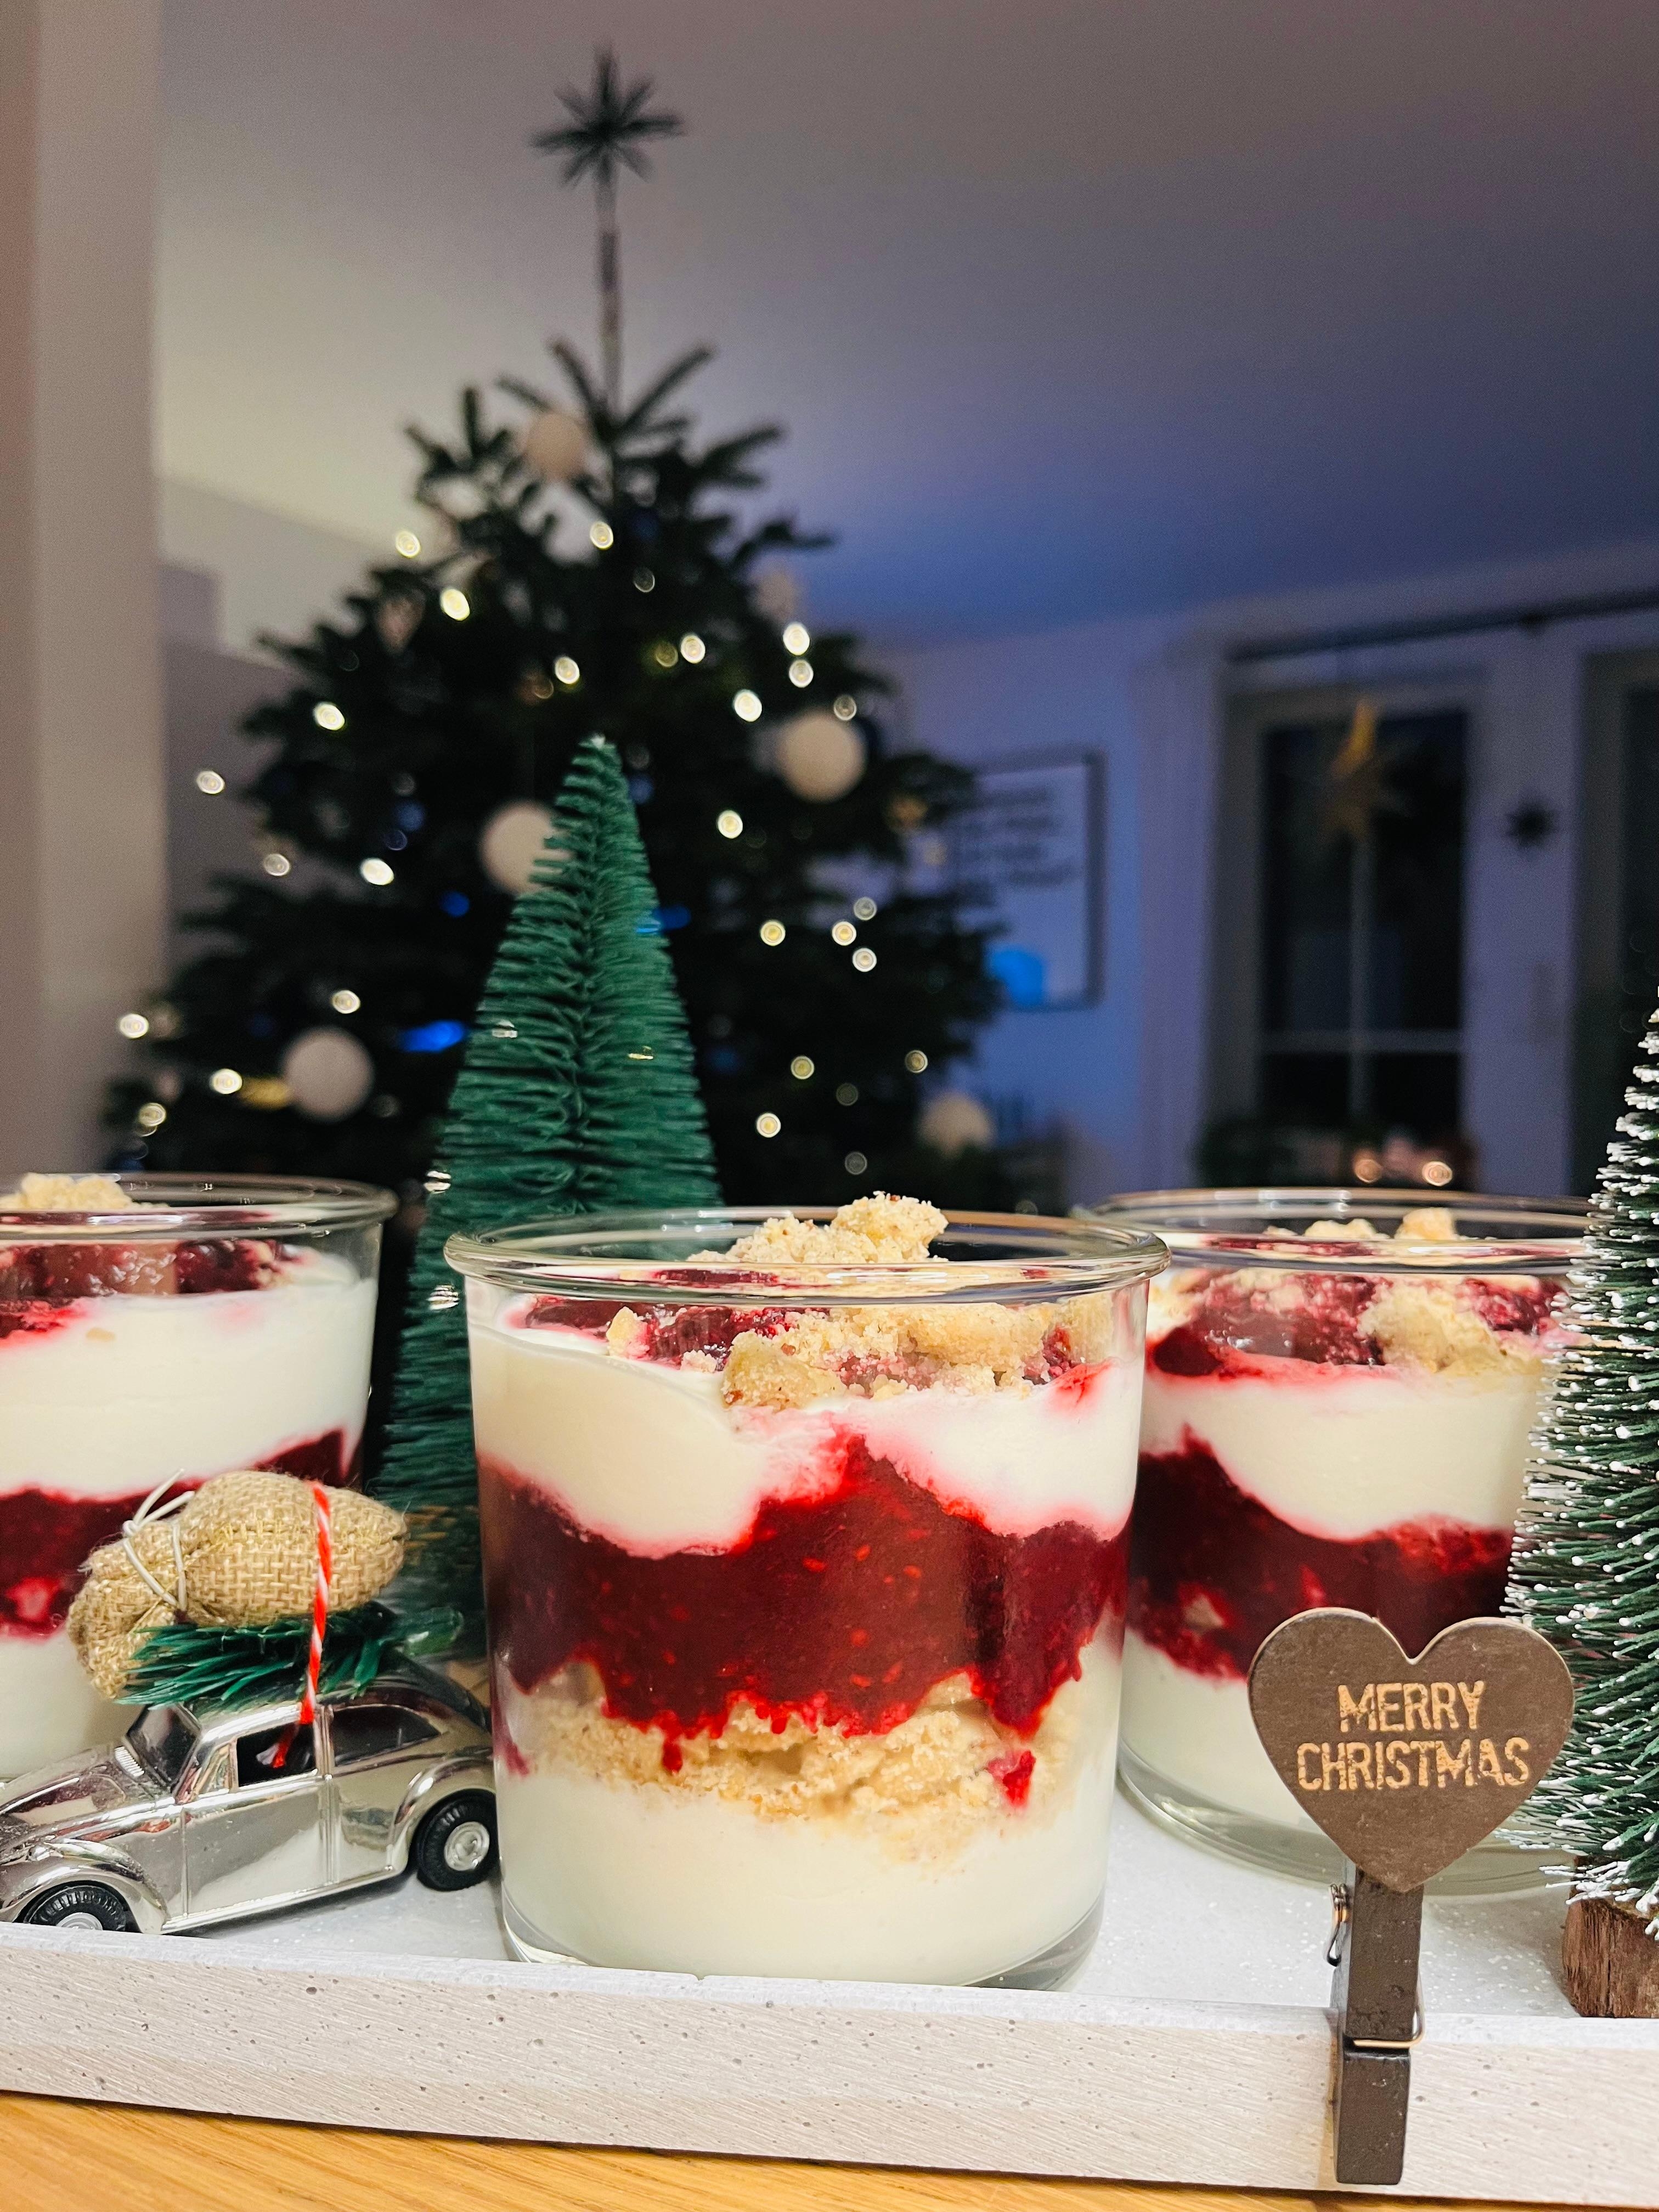 Frohe Weihnachten 🎄🎁❤️! Bei uns gibt’s heute als Dessert ein Vanillekipferl-Tiramisu 😋 #weihnachten #lecker #couchliebt #nachtisch